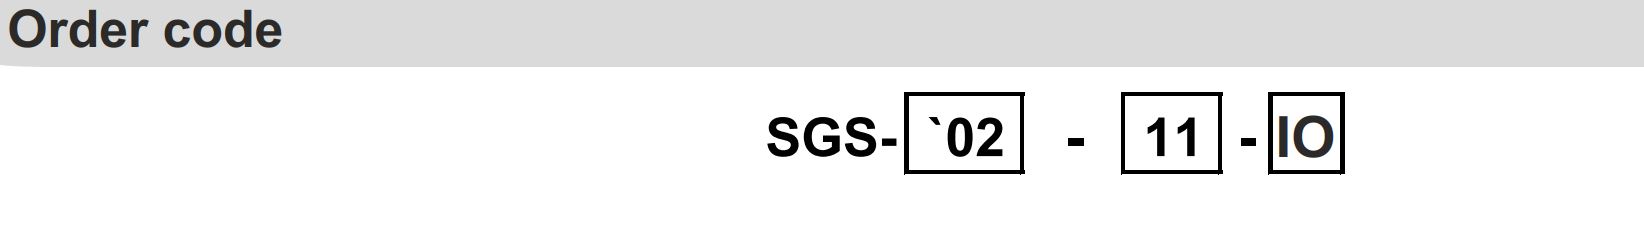 Bestelinformatie SGS02-IO